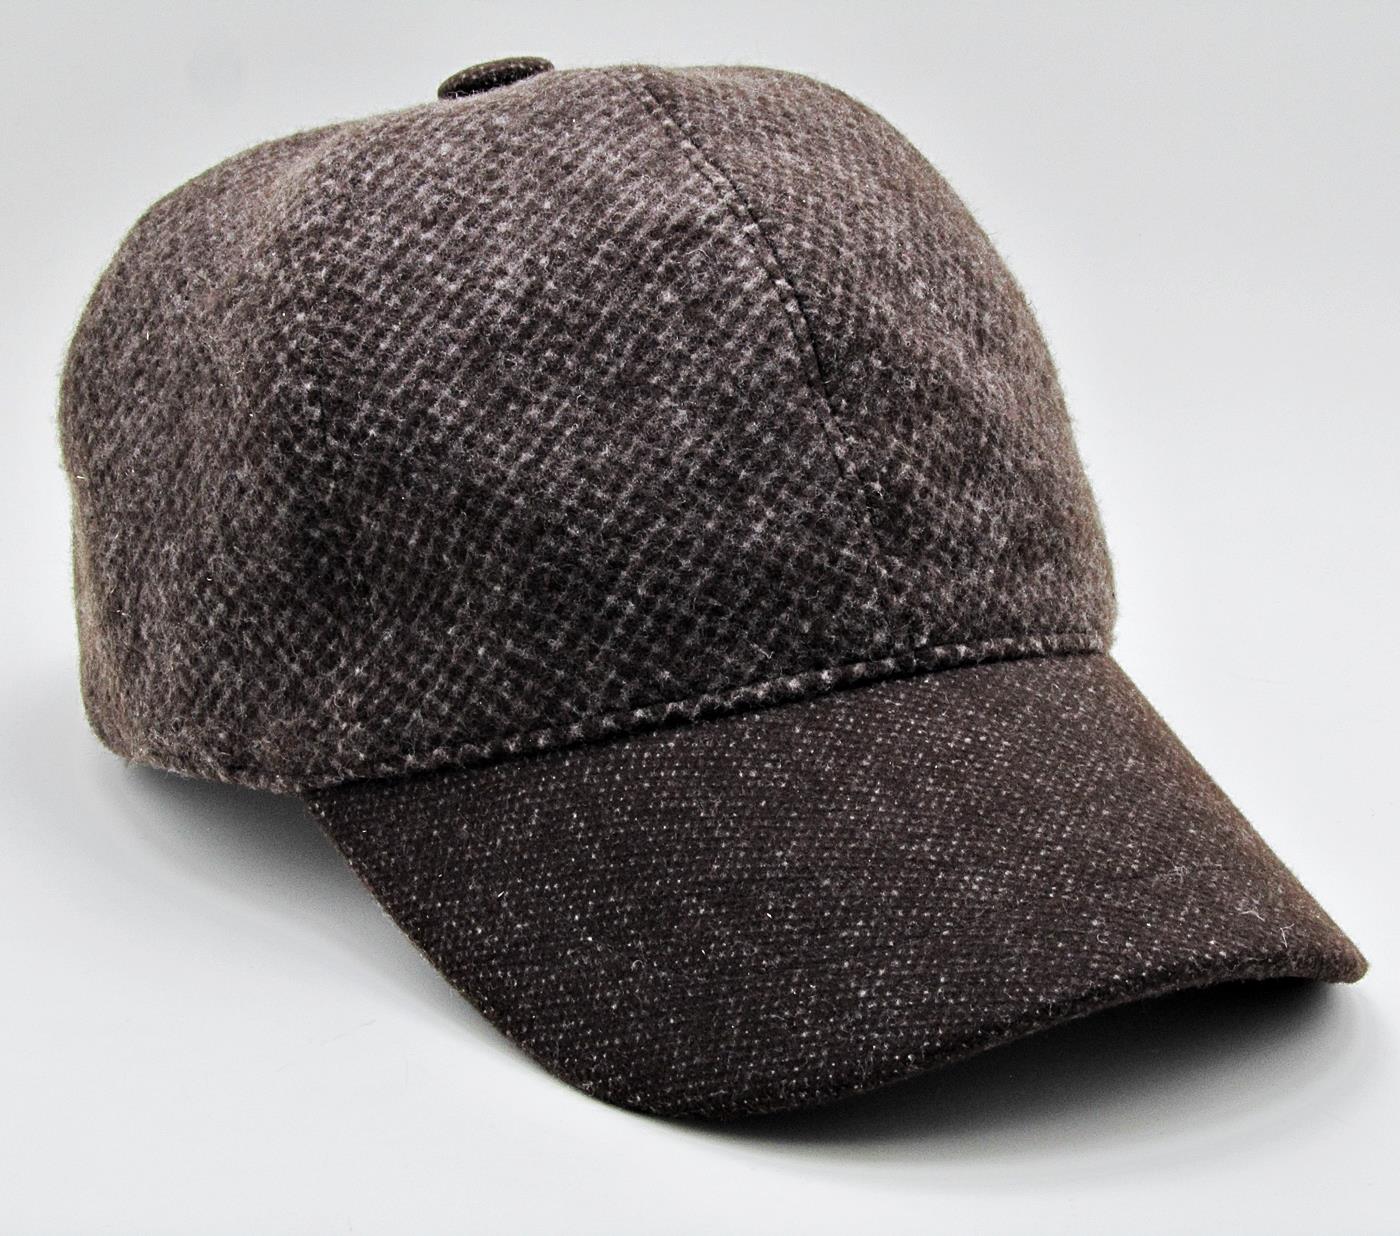 Kışlık Kaşe Beyzbol Kep Erkek Şapka cp225 - Kahverengi